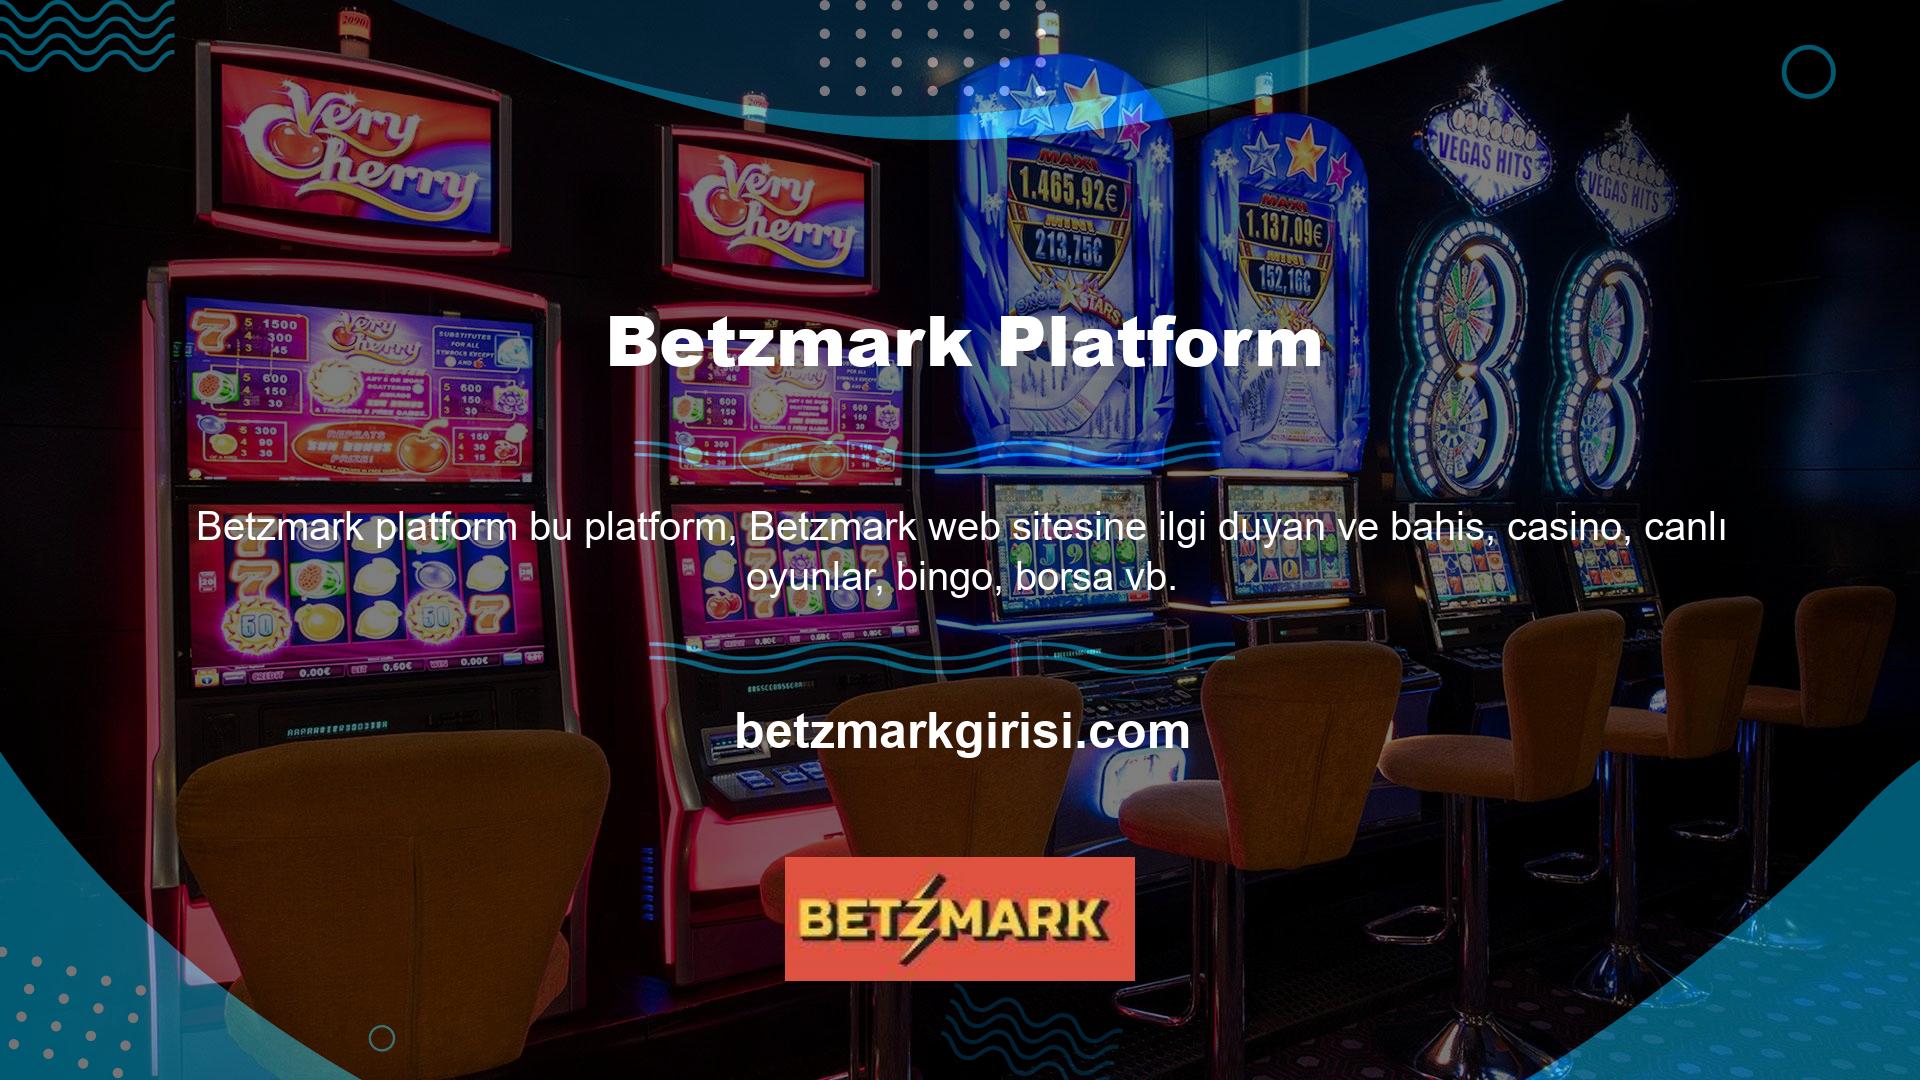 gibi farklı alanlarda bu site hakkında daha fazla bilgi edinmek isteyen casino meraklılarına hizmet vermektedir